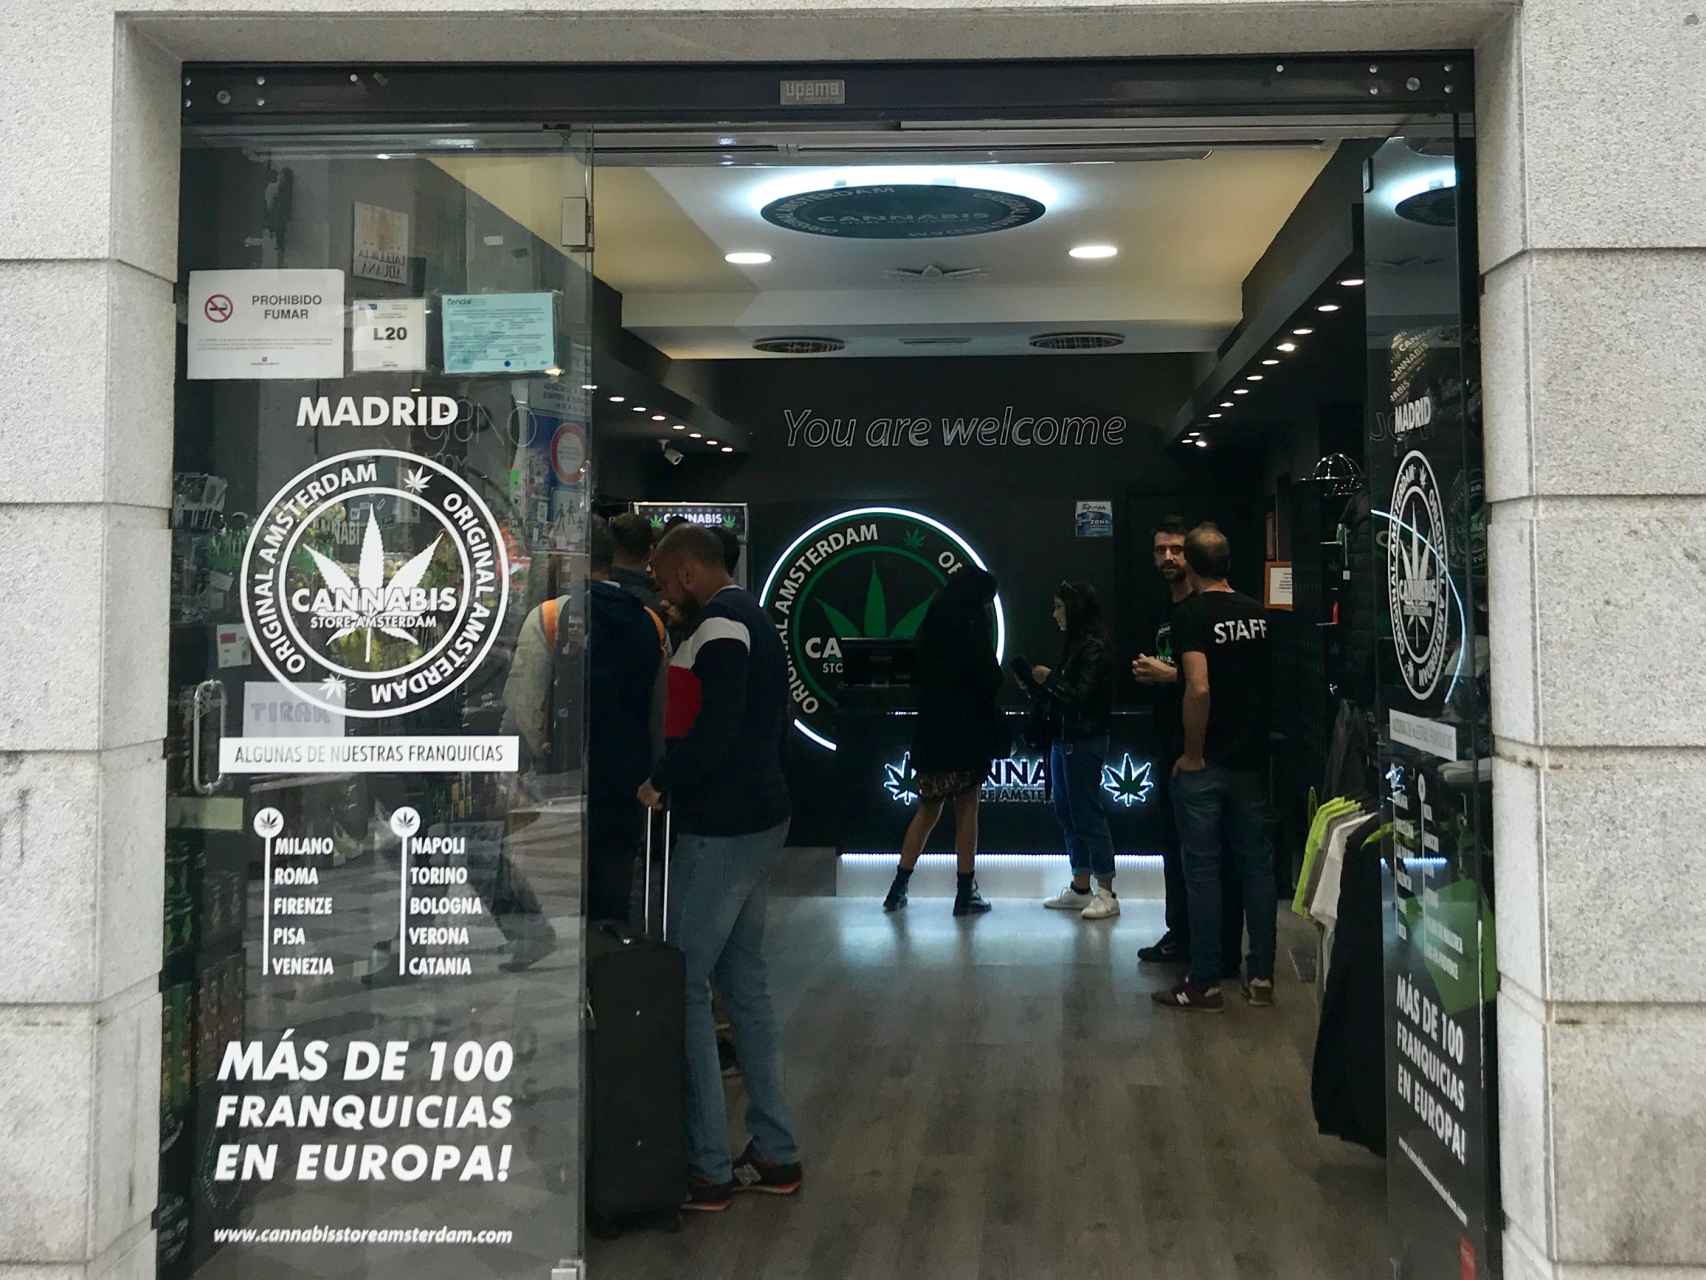 Entrada del establecimiento Cannabis Store Amsterdam, ubicado en la calle madrileña de Montera